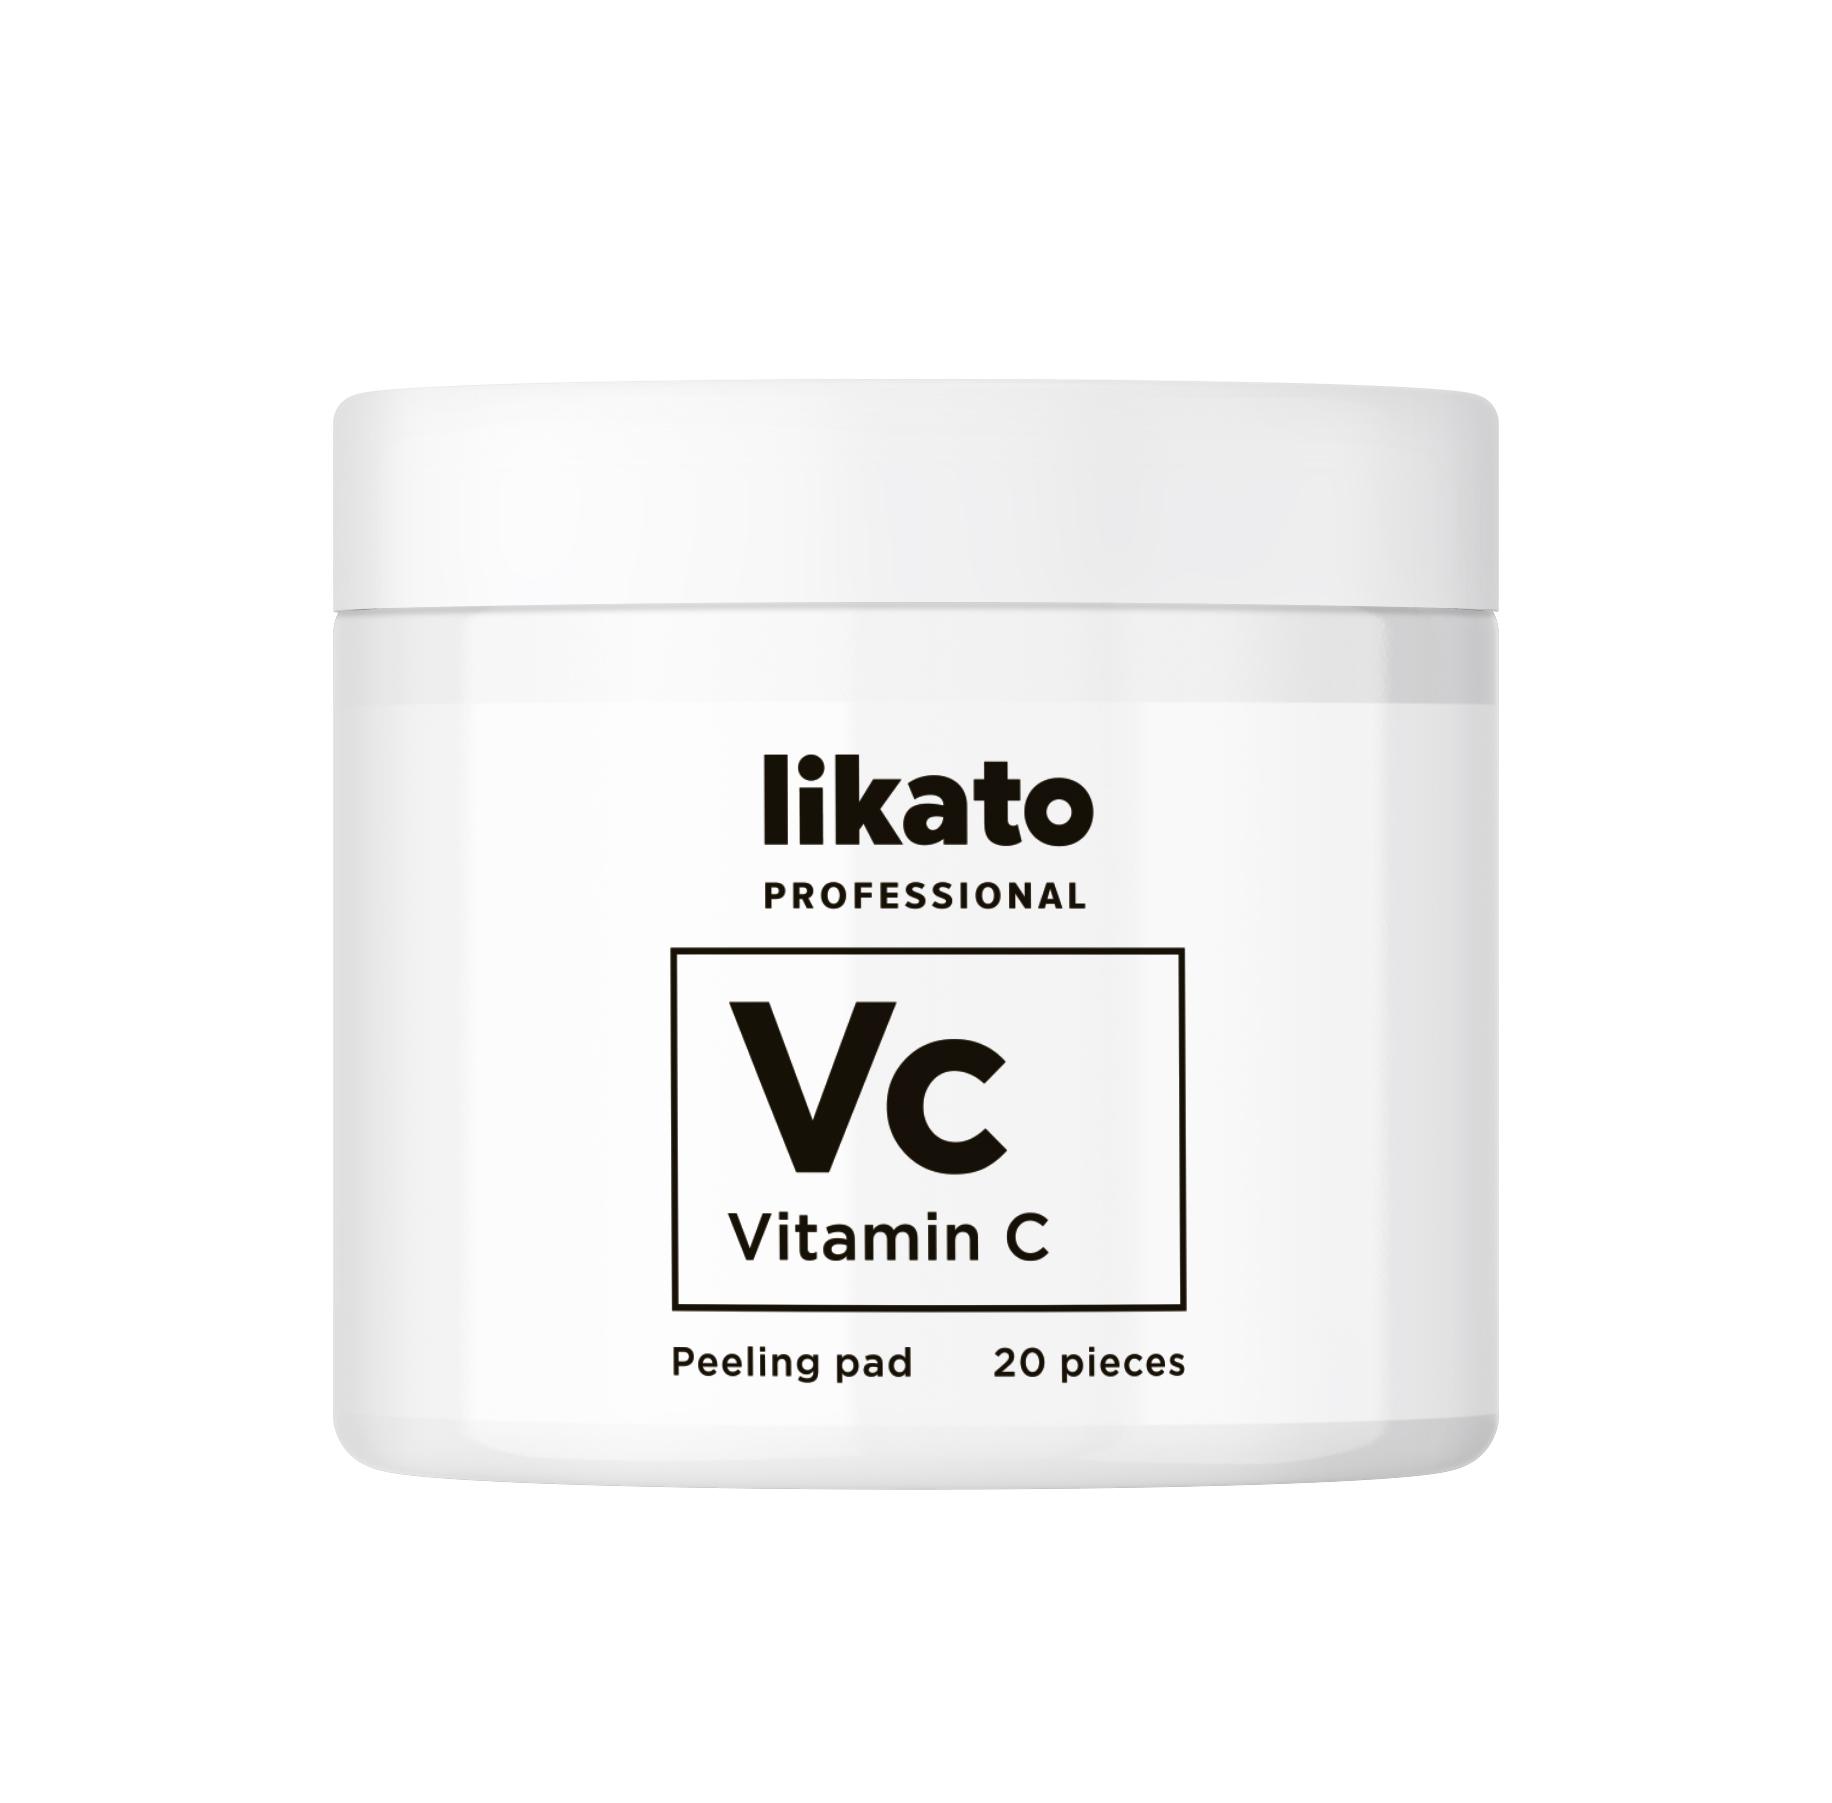 Пилинг-пэды для совершенной кожи с AHА-кислотами и витамином С, Likato Professional